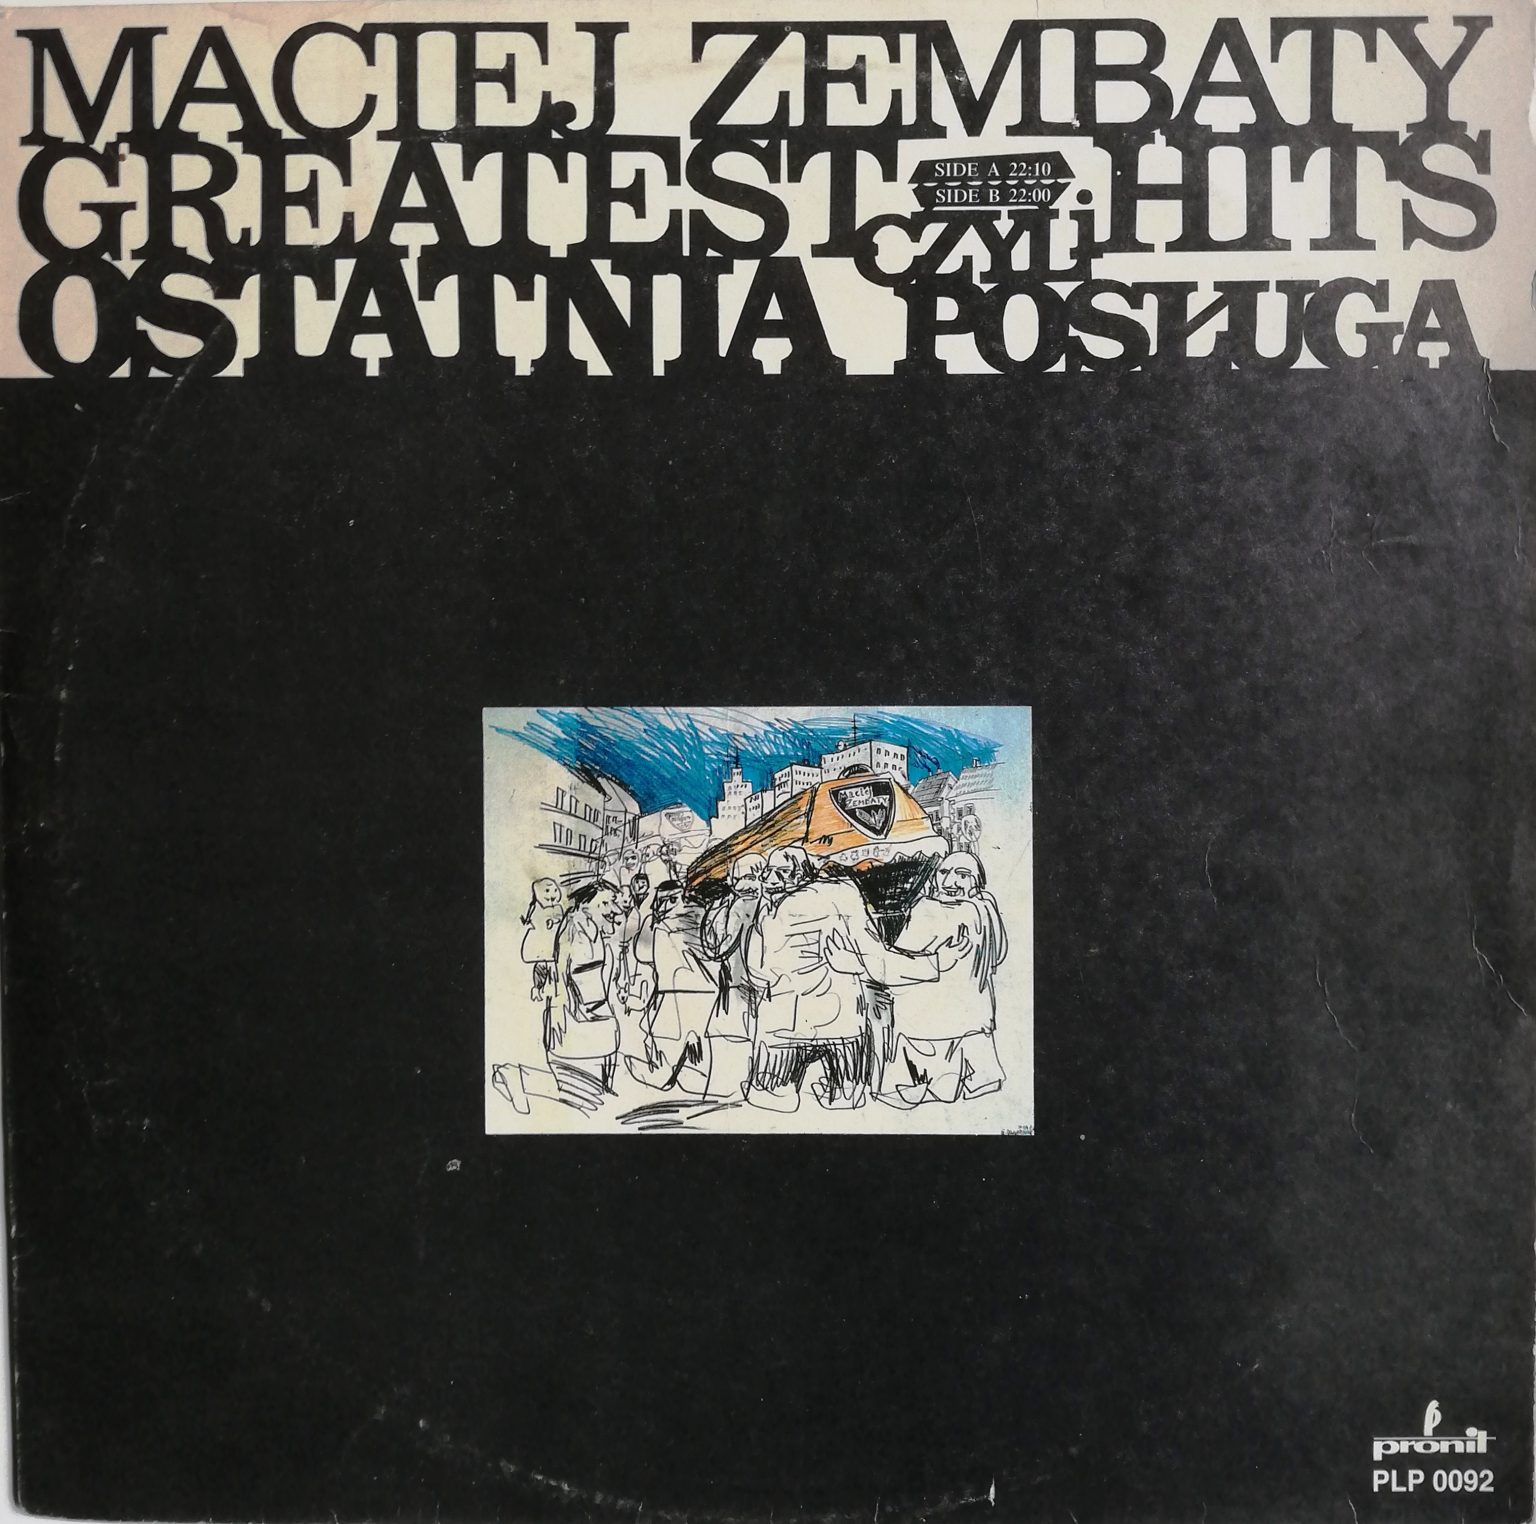 Maciej Zembaty – Greatest Hits Czyli Ostatnia Posługa